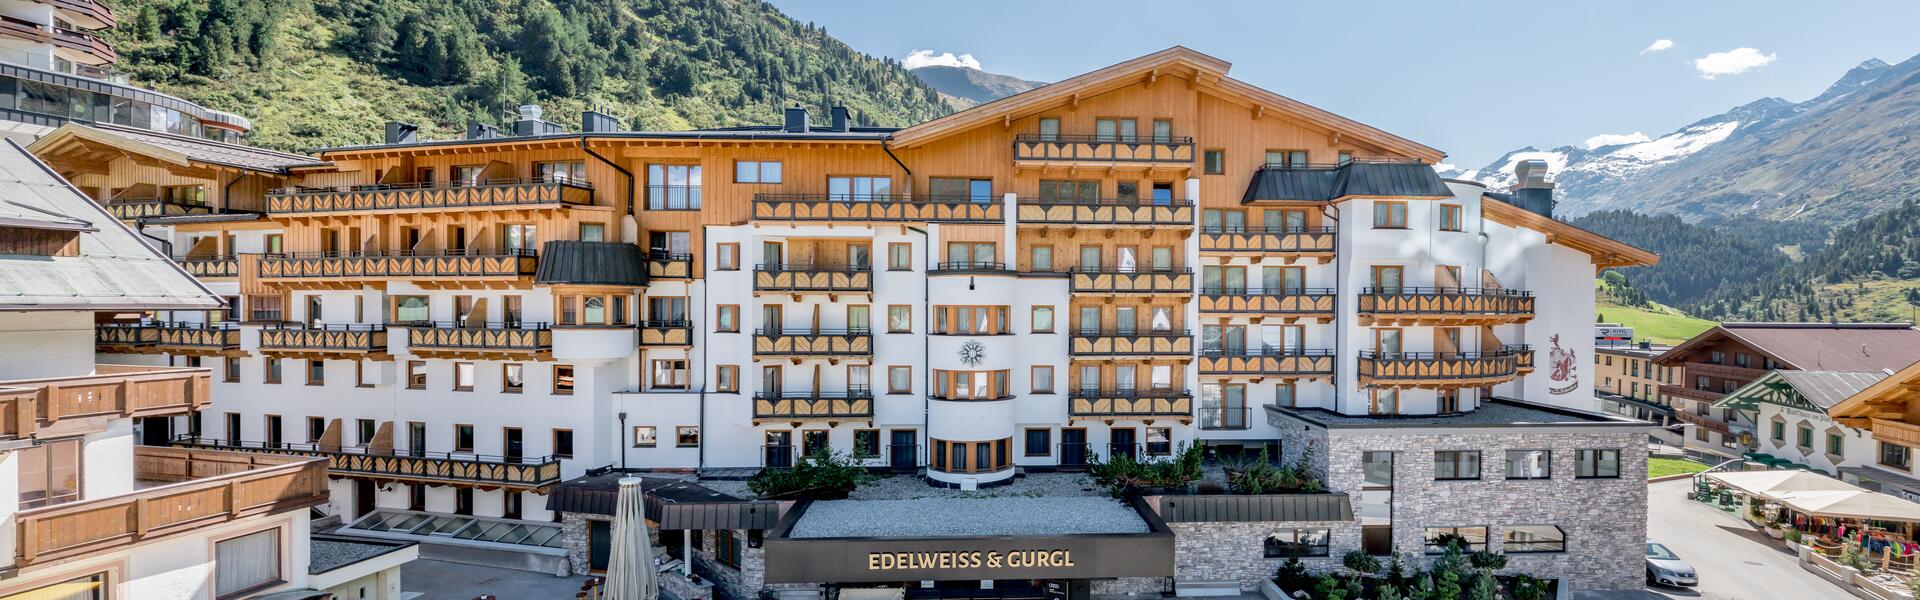 hotel Edelweiss in summer